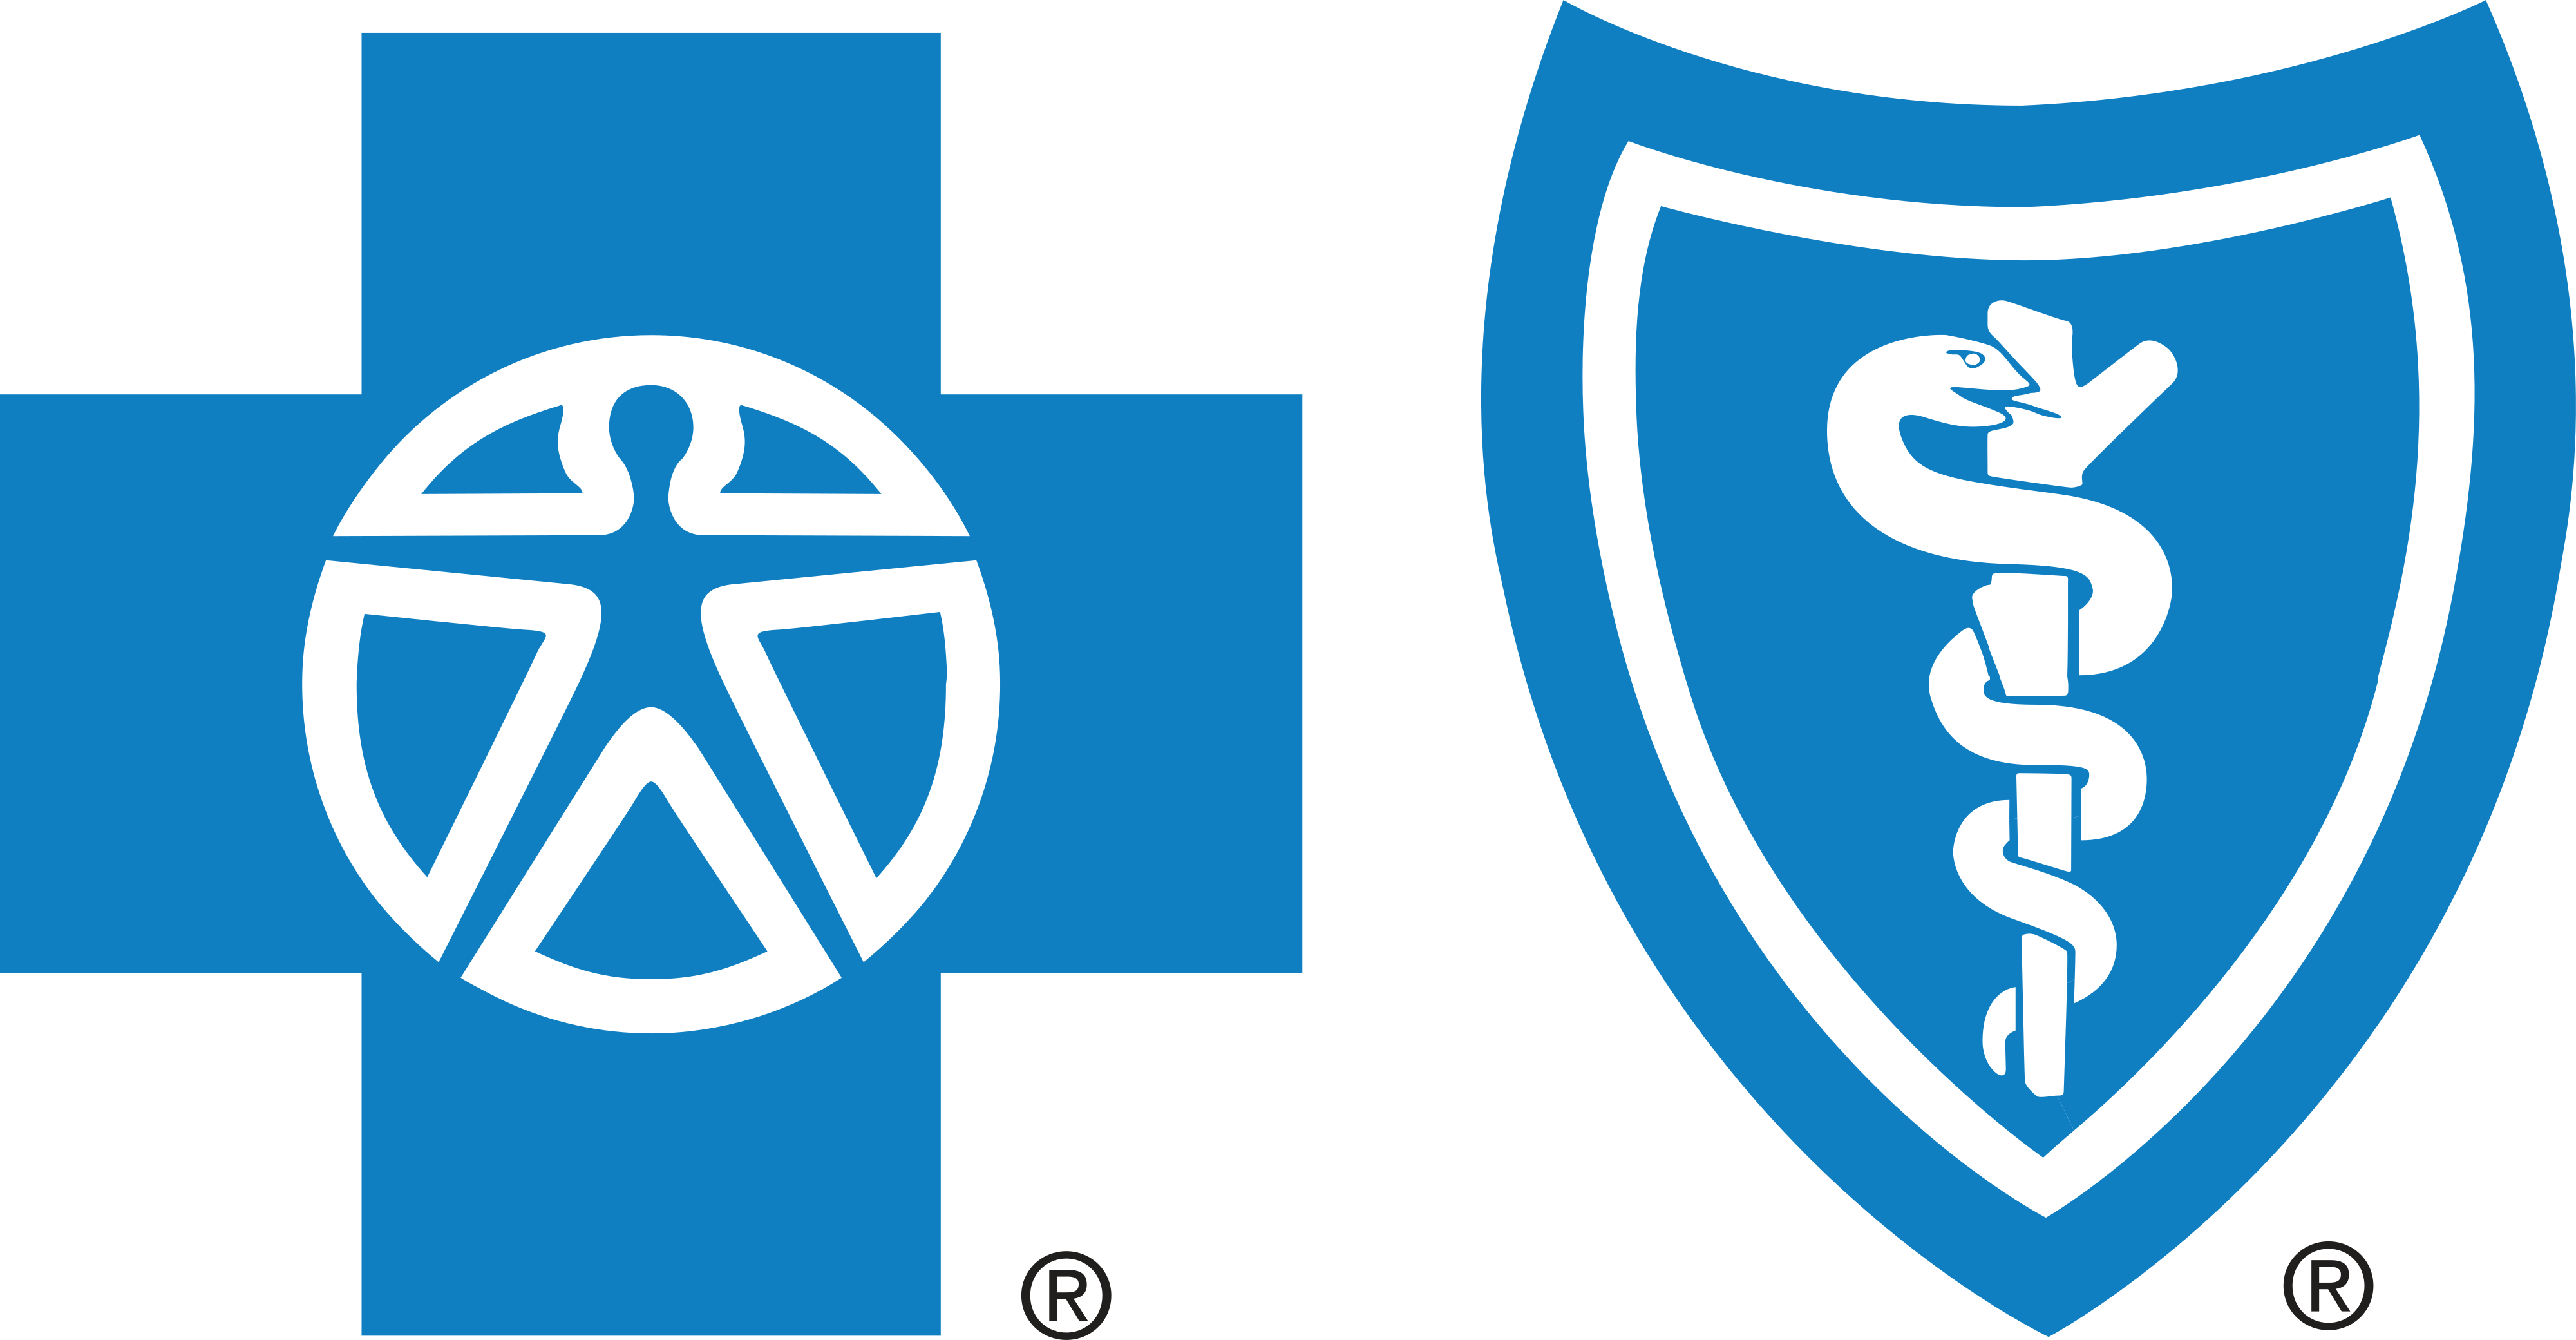 Blue Cross Blue Shield logo download.